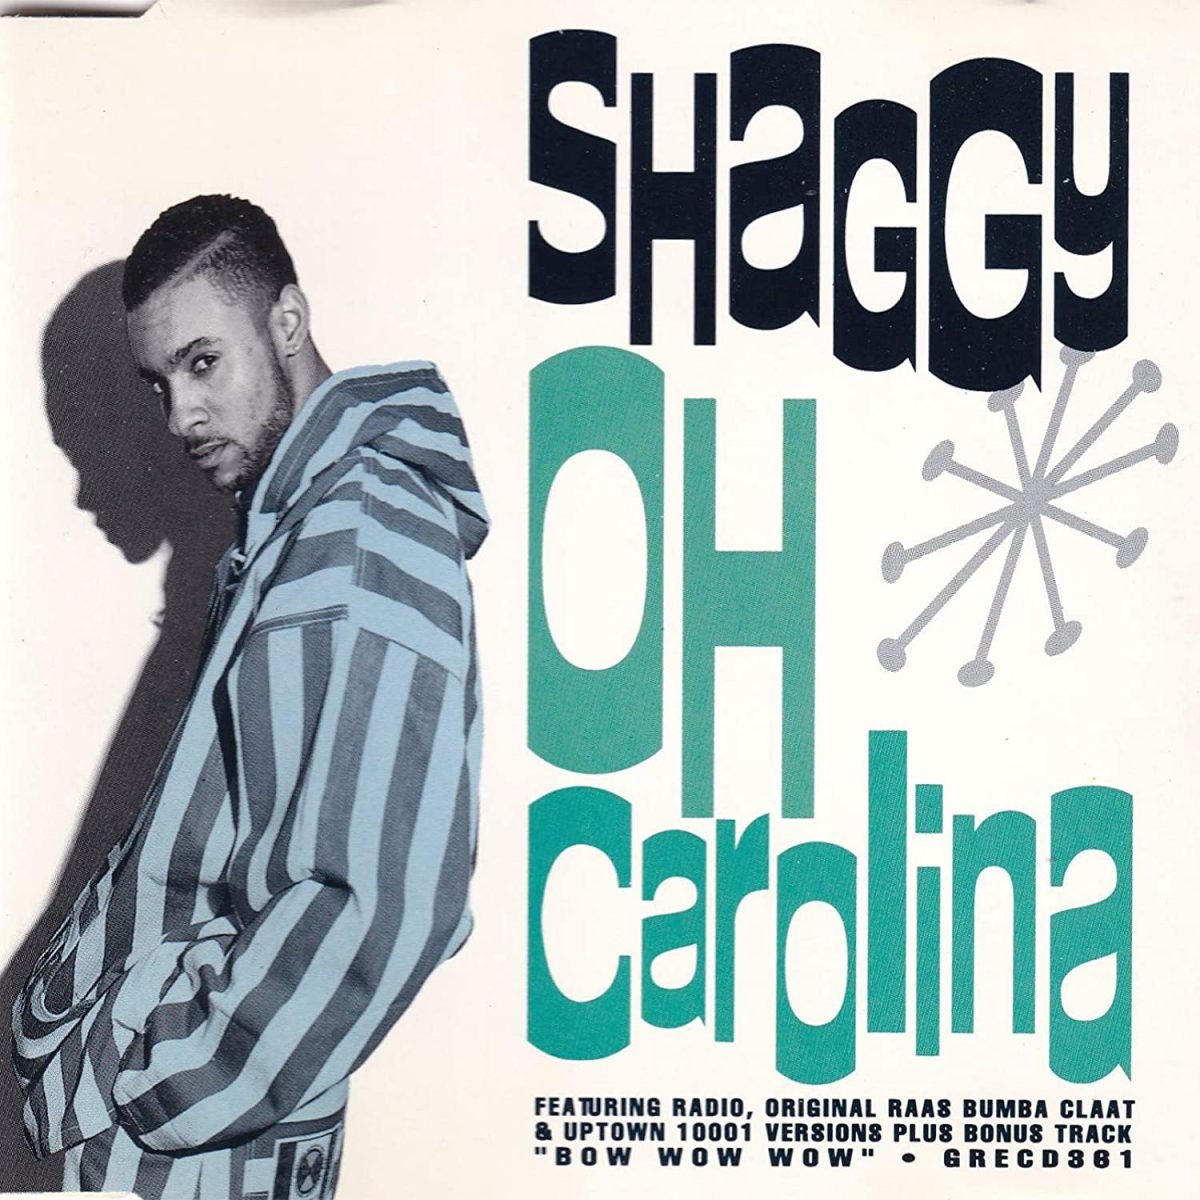 Shaggy - Oh Carolina